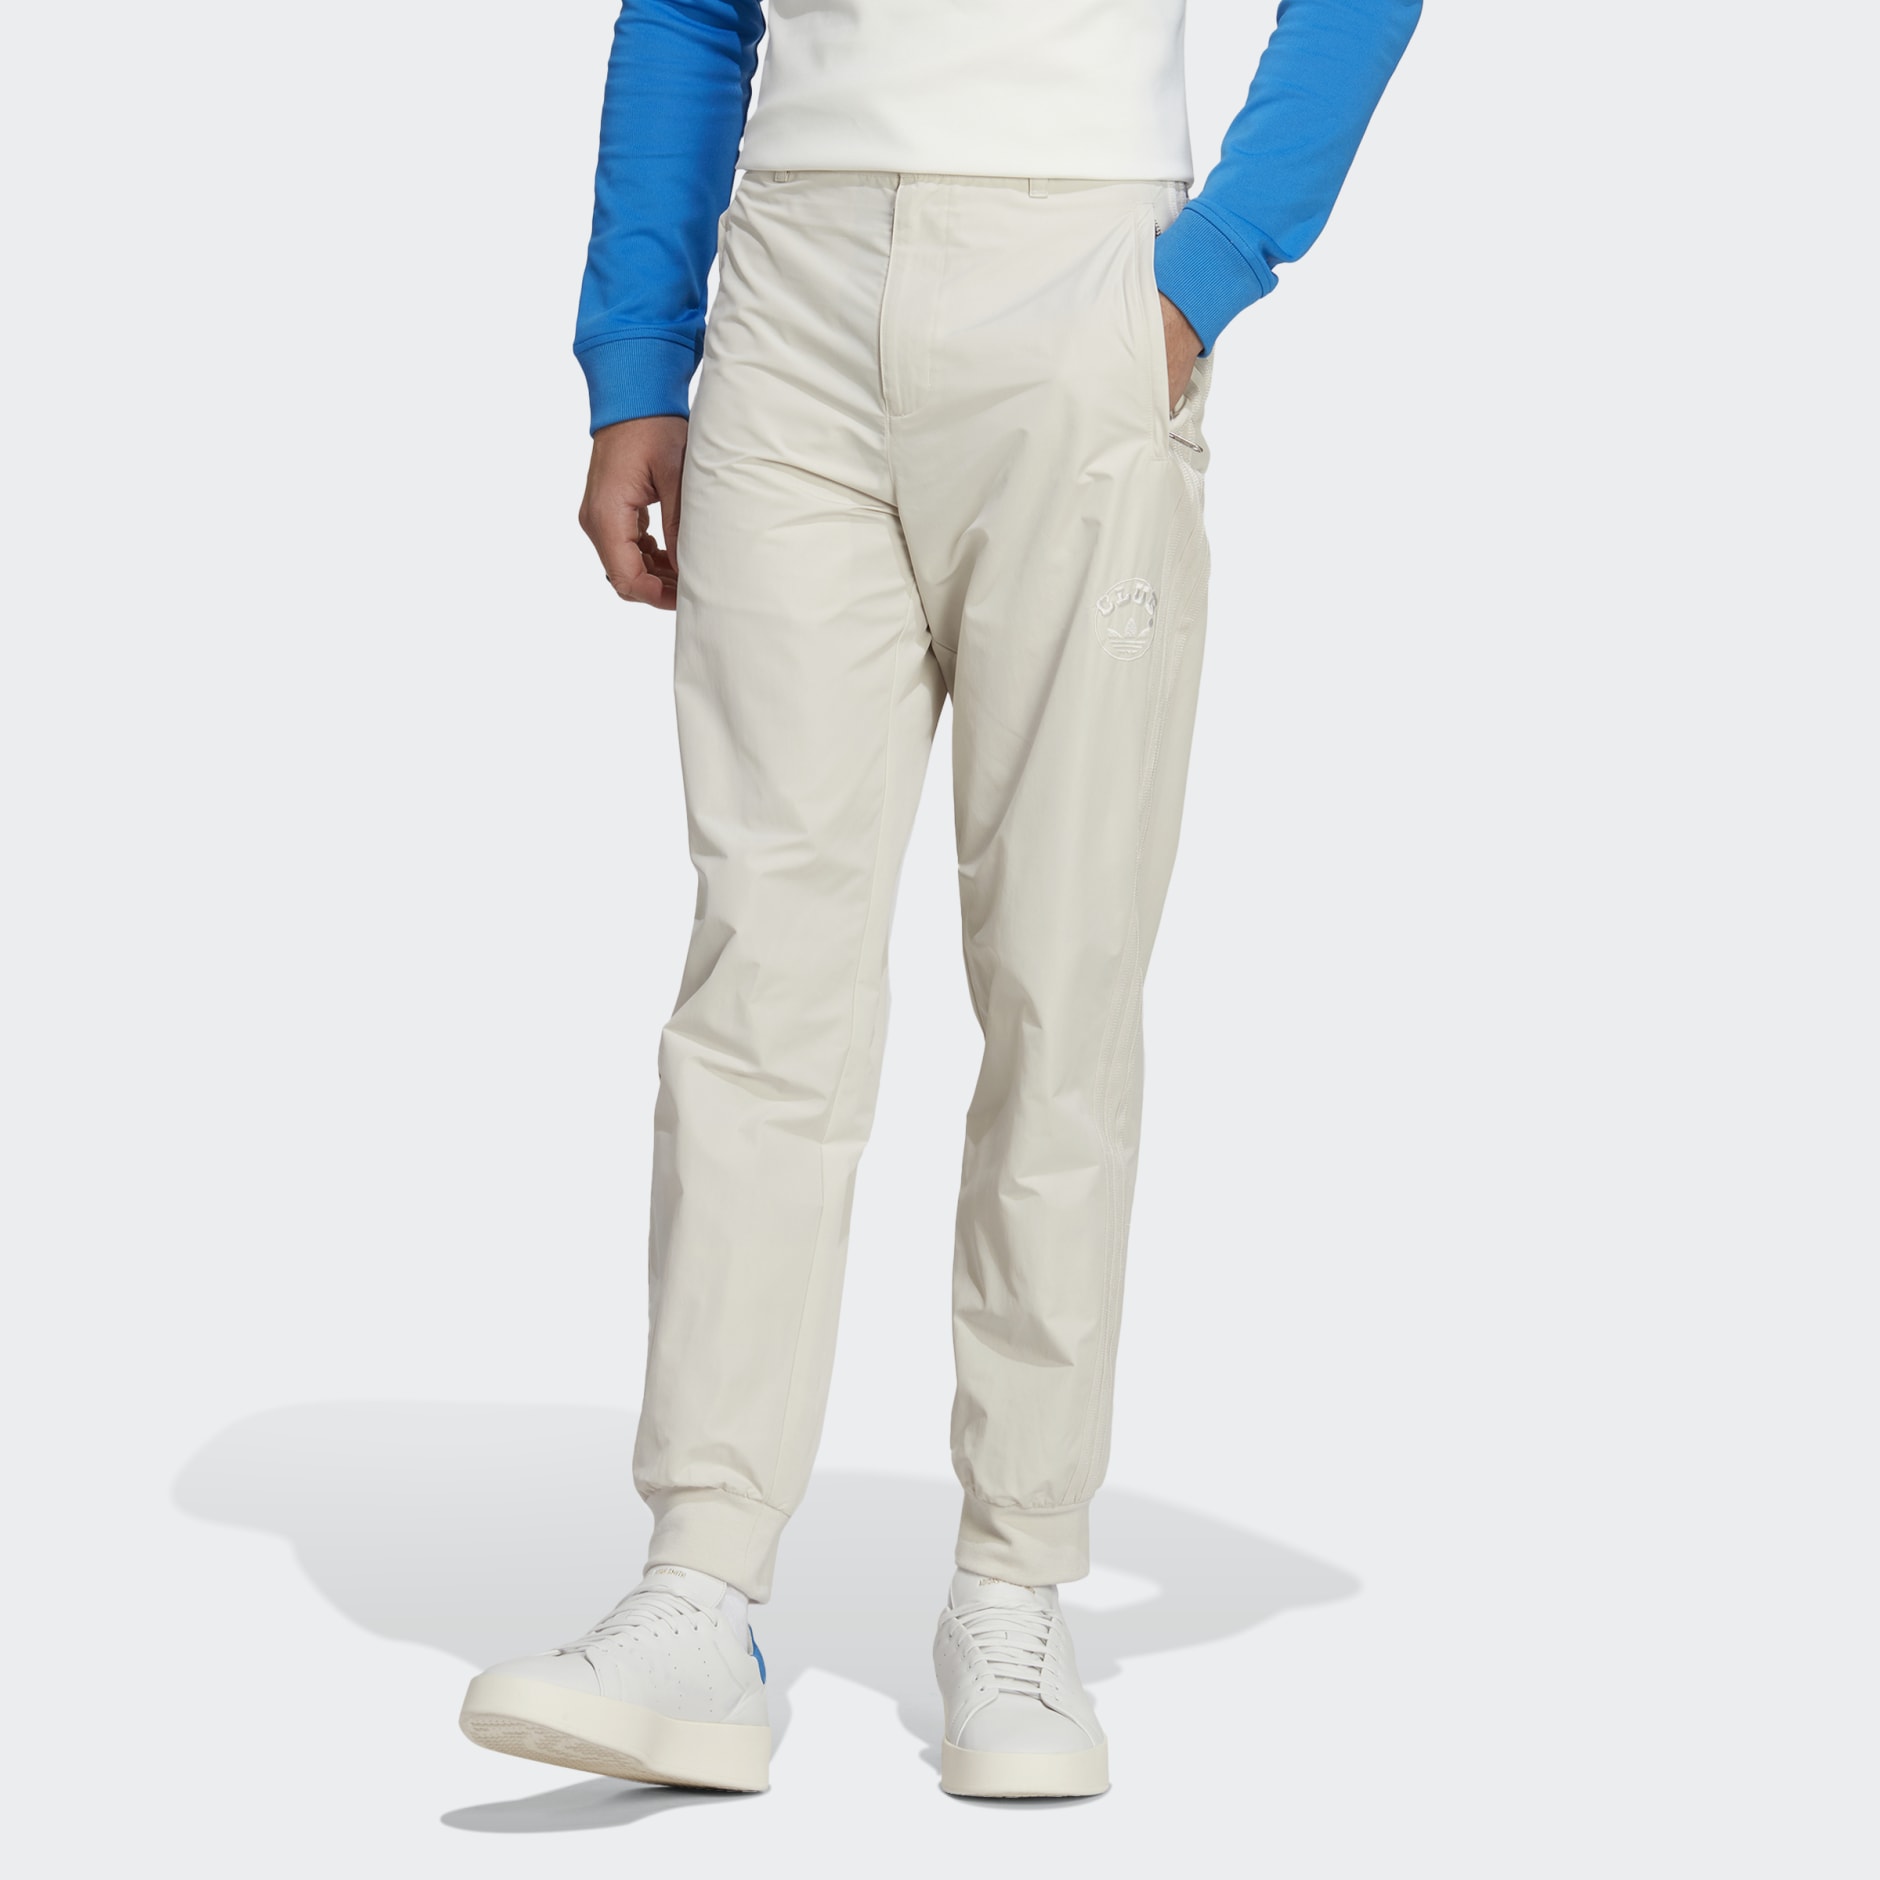 Adidas Women's Cuffed Pants - Grey HE4772 - Trade Sports